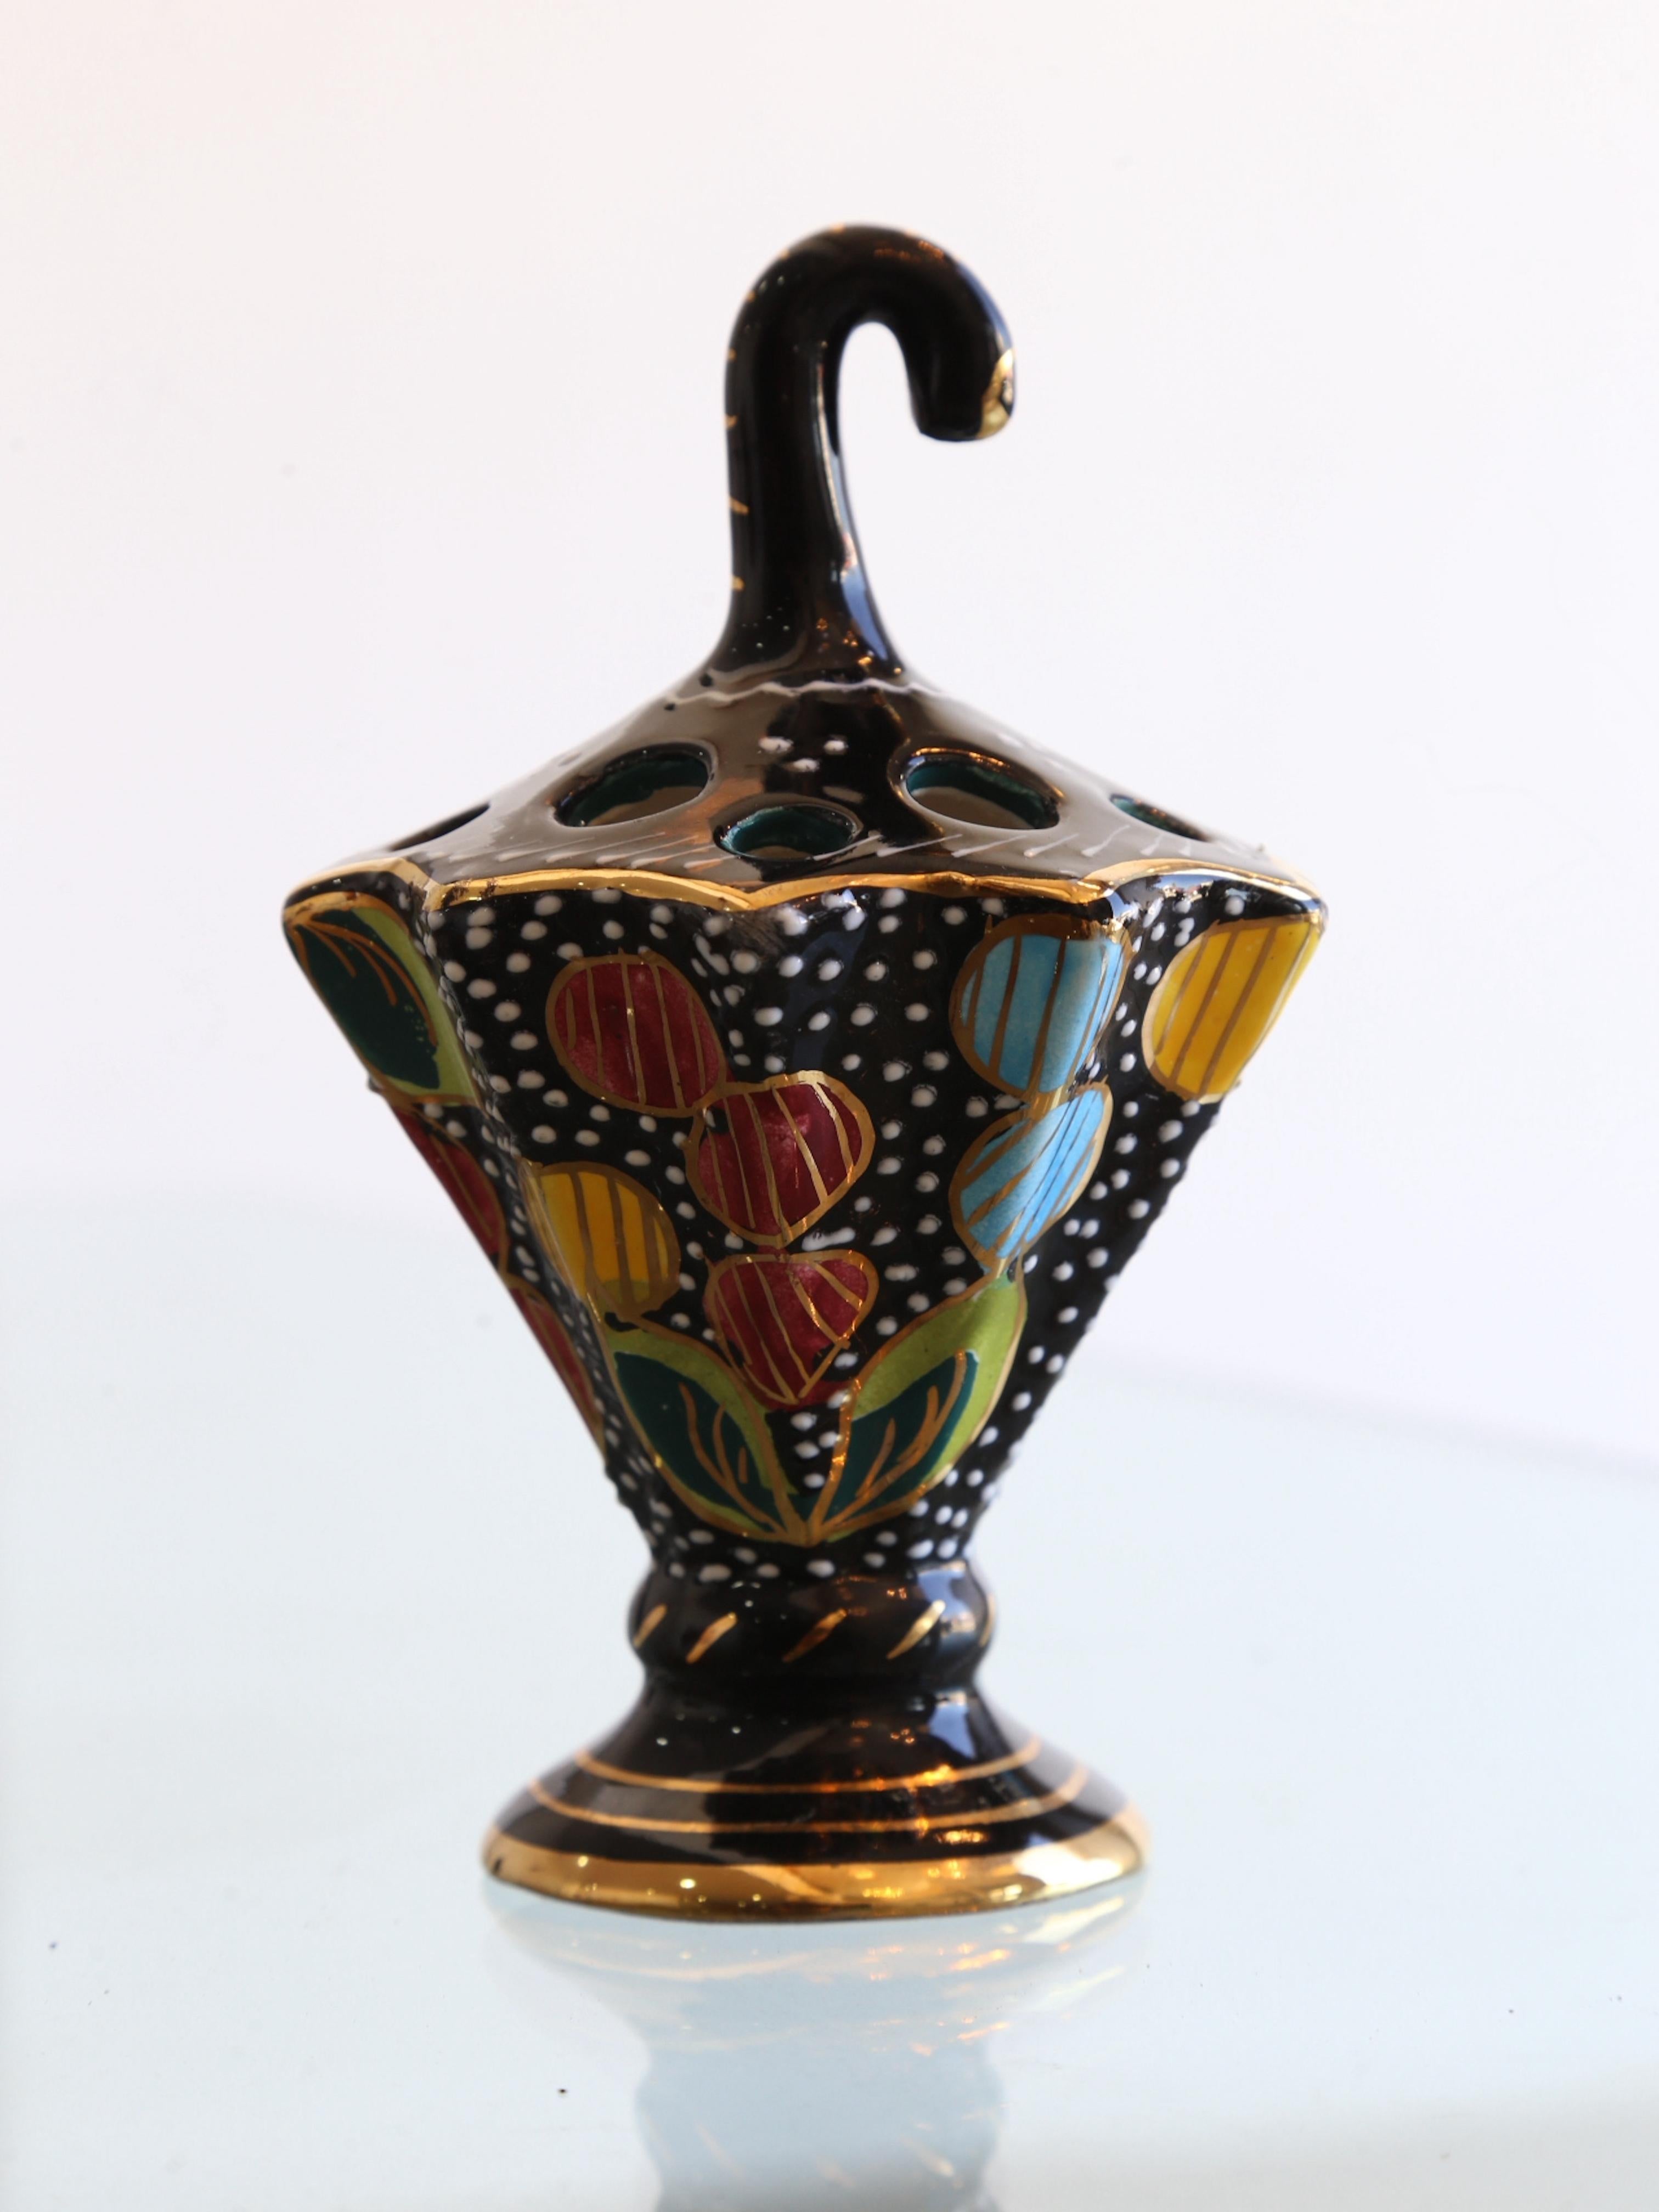 Les céramiques italiennes de Deruta sont un type de poterie italienne originaire de la ville de Deruta, dans le centre de l'Italie. Les céramiques de Deruta sont connues pour leurs motifs complexes et leurs couleurs vives, qui s'inspirent souvent de